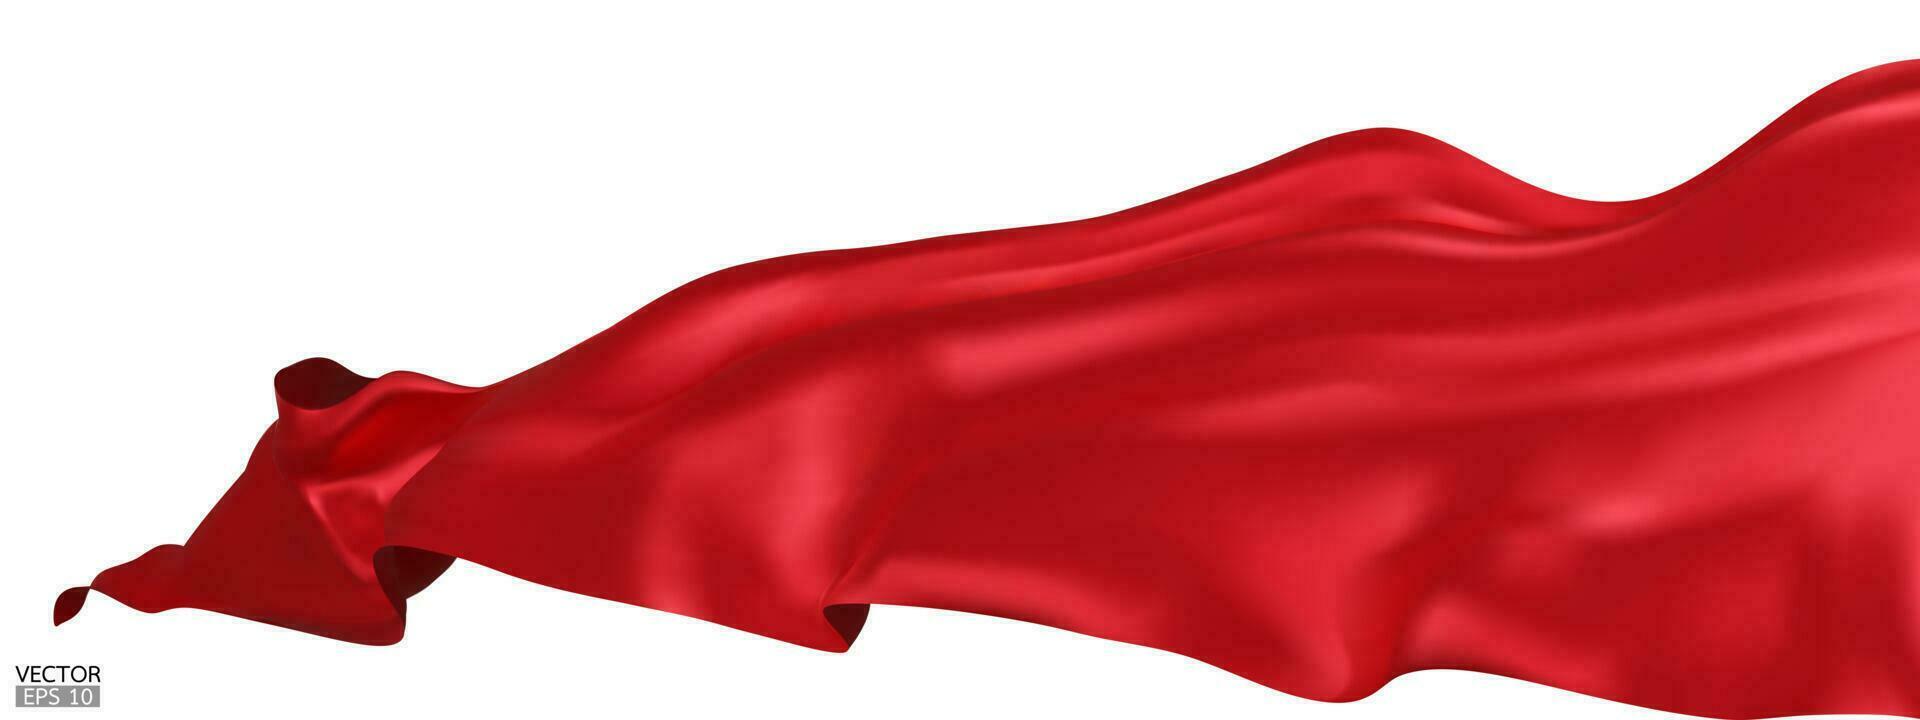 en volant rouge soie textile en tissu drapeau Contexte. lisse élégant rouge satin isolé sur blanc Contexte pour grandiose ouverture cérémonie. rouge rideau. 3d vecteur illustration.